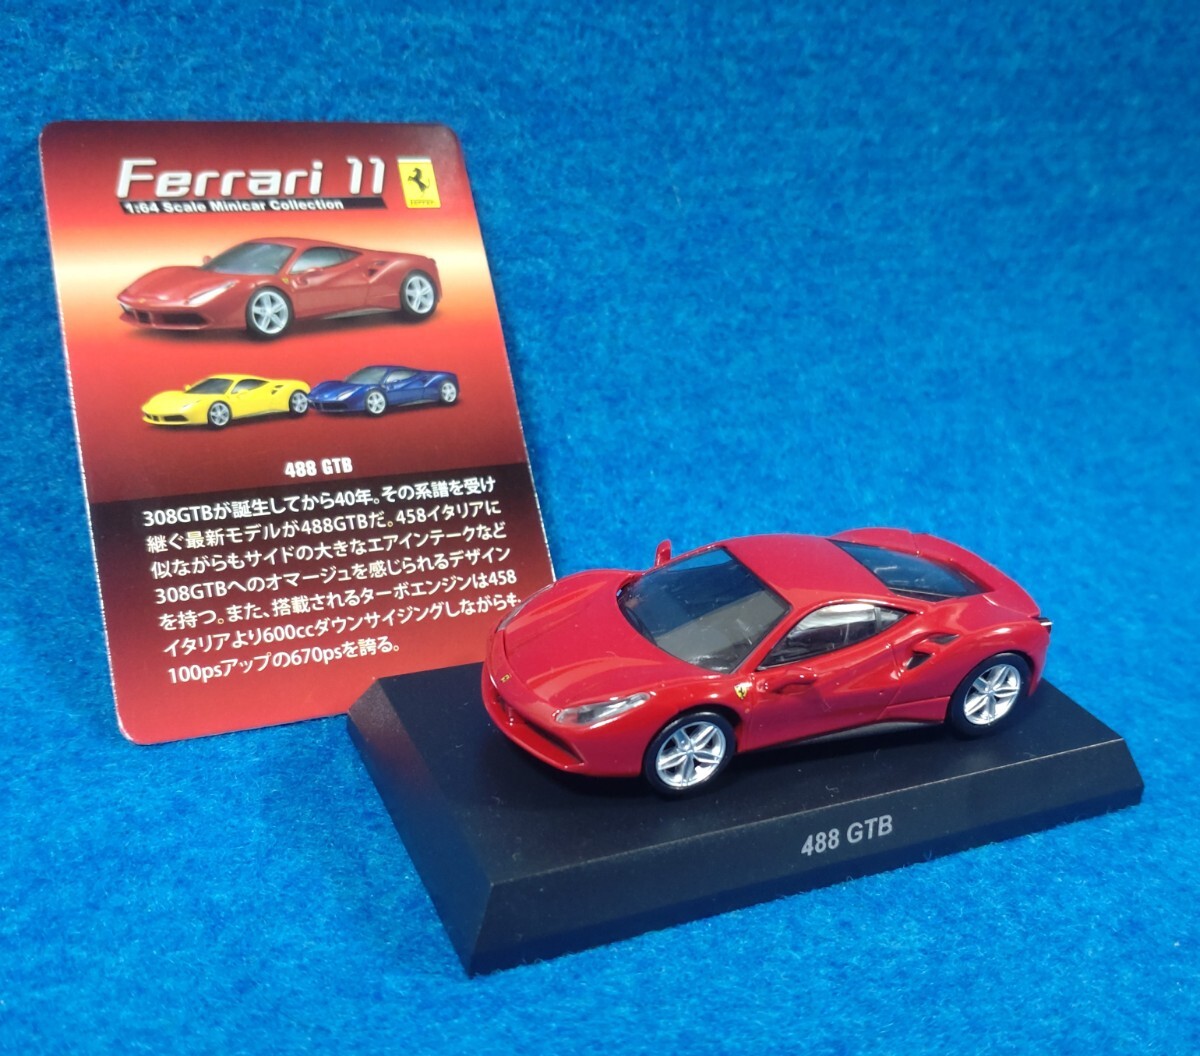 【ミニカー】京商1/64 Ferrari11 488 GTB フェラーリ KYOSHO_画像1